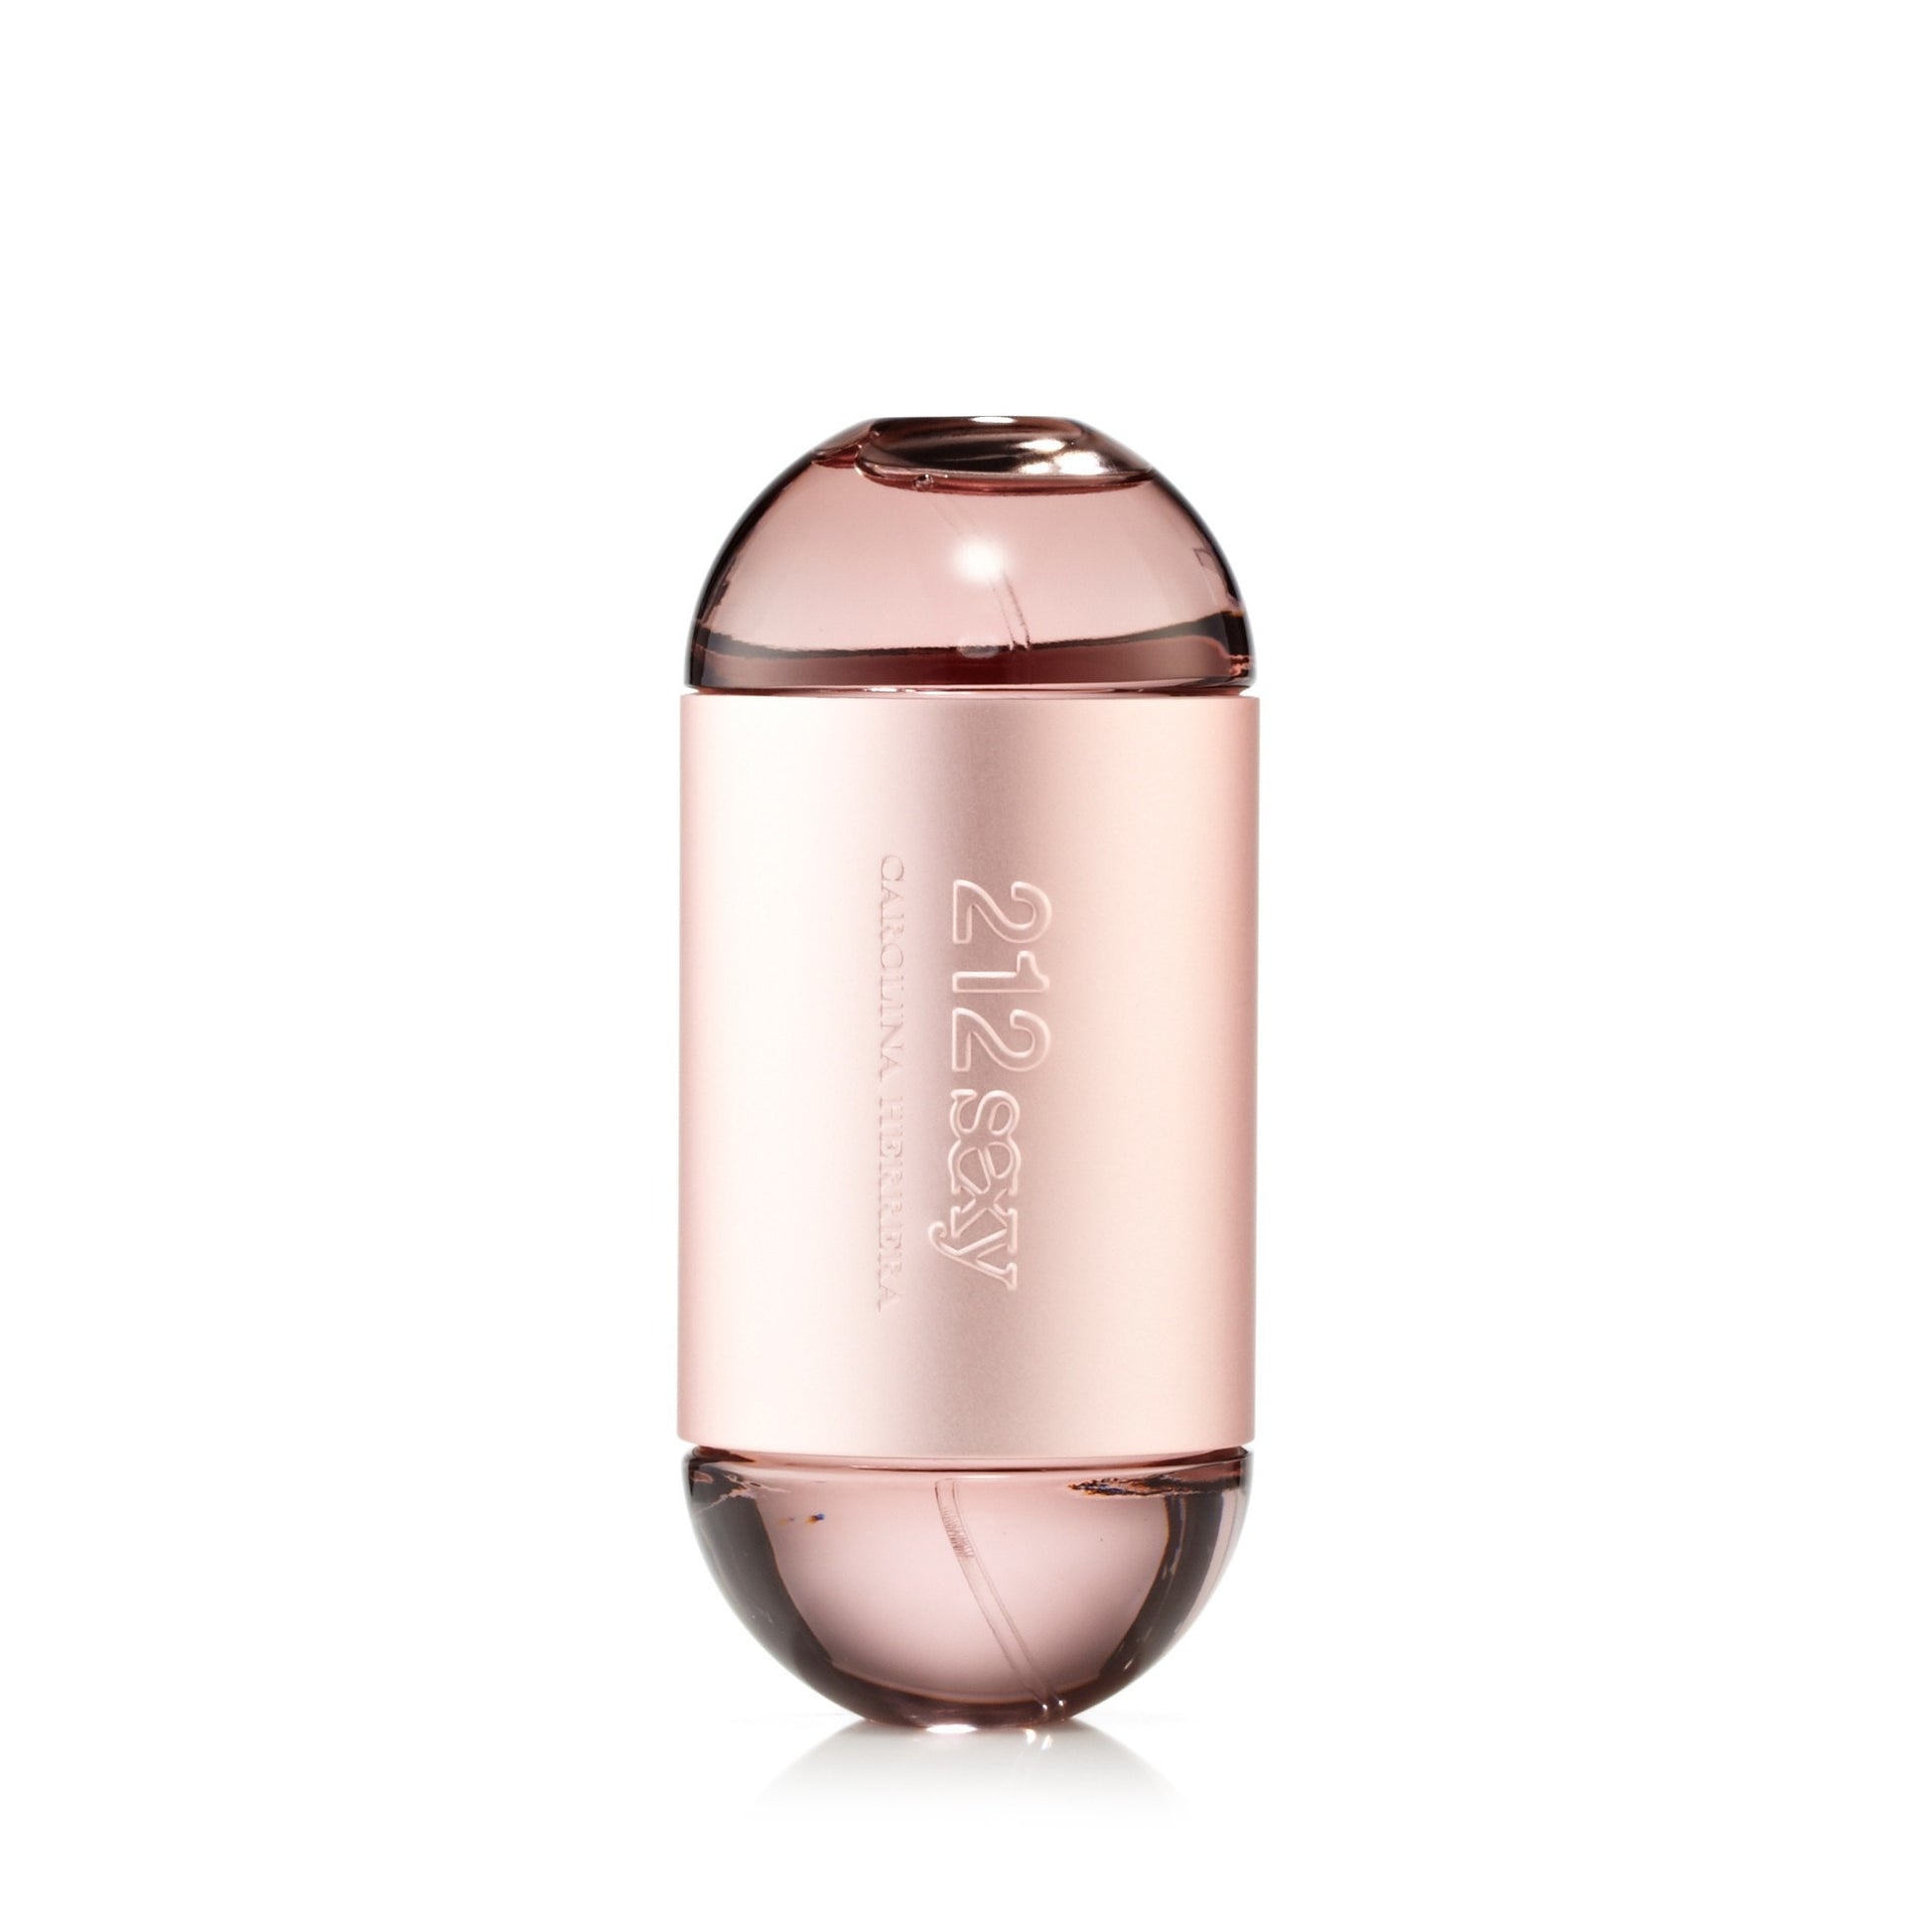 212 Sexy Eau de Parfum Spray for Women by Carolina Herrera 3.4 oz. Click to open in modal